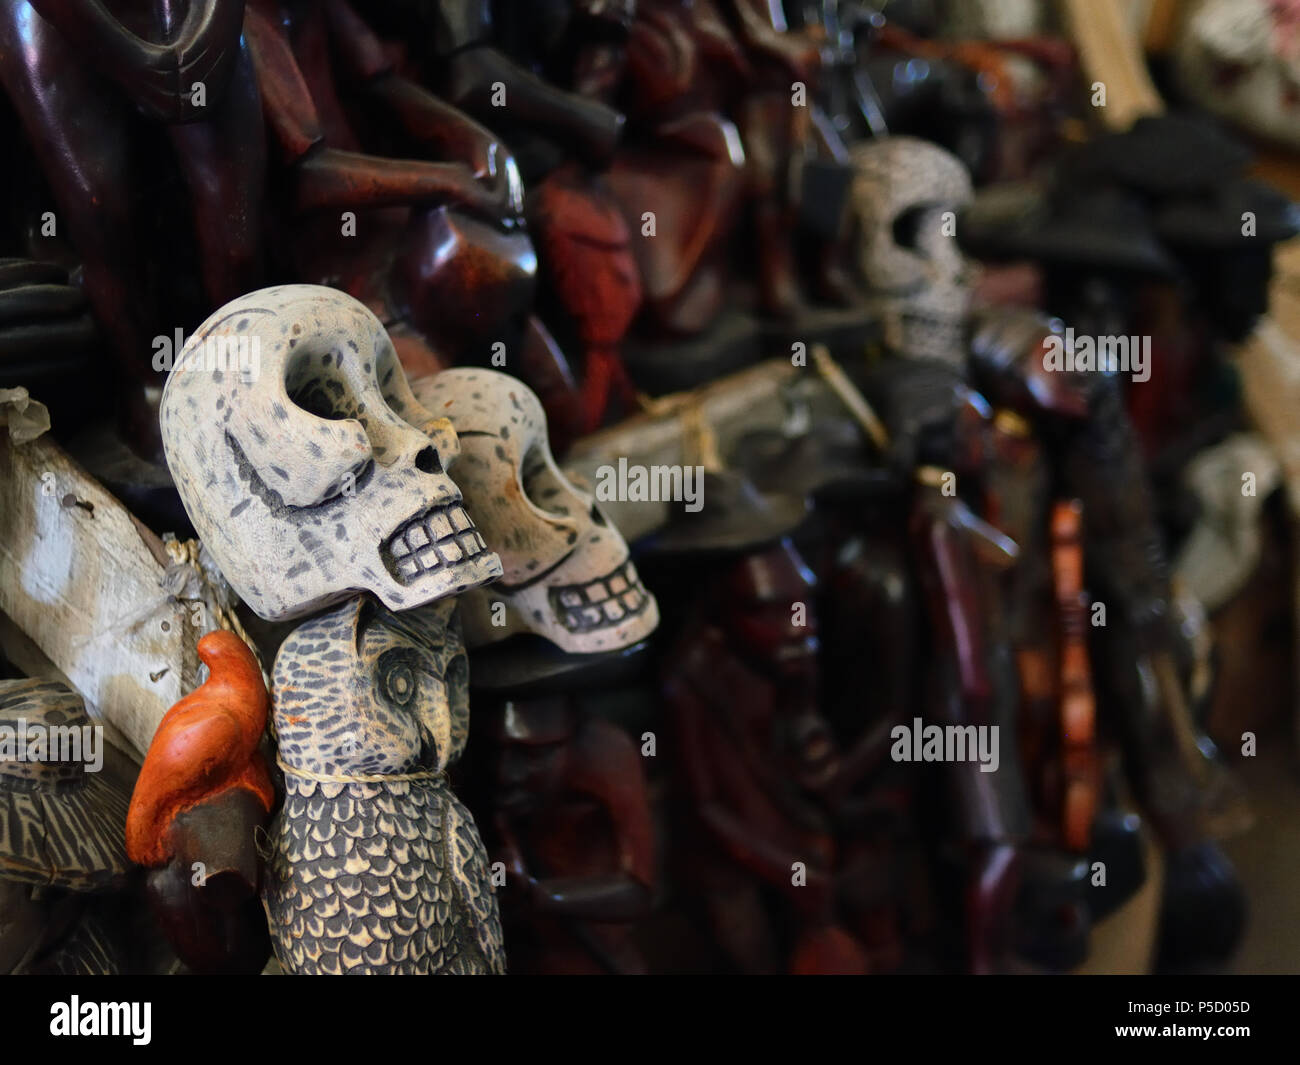 Marché du fer sur voodoo figurines dans le centre de la capitale Haïti Banque D'Images